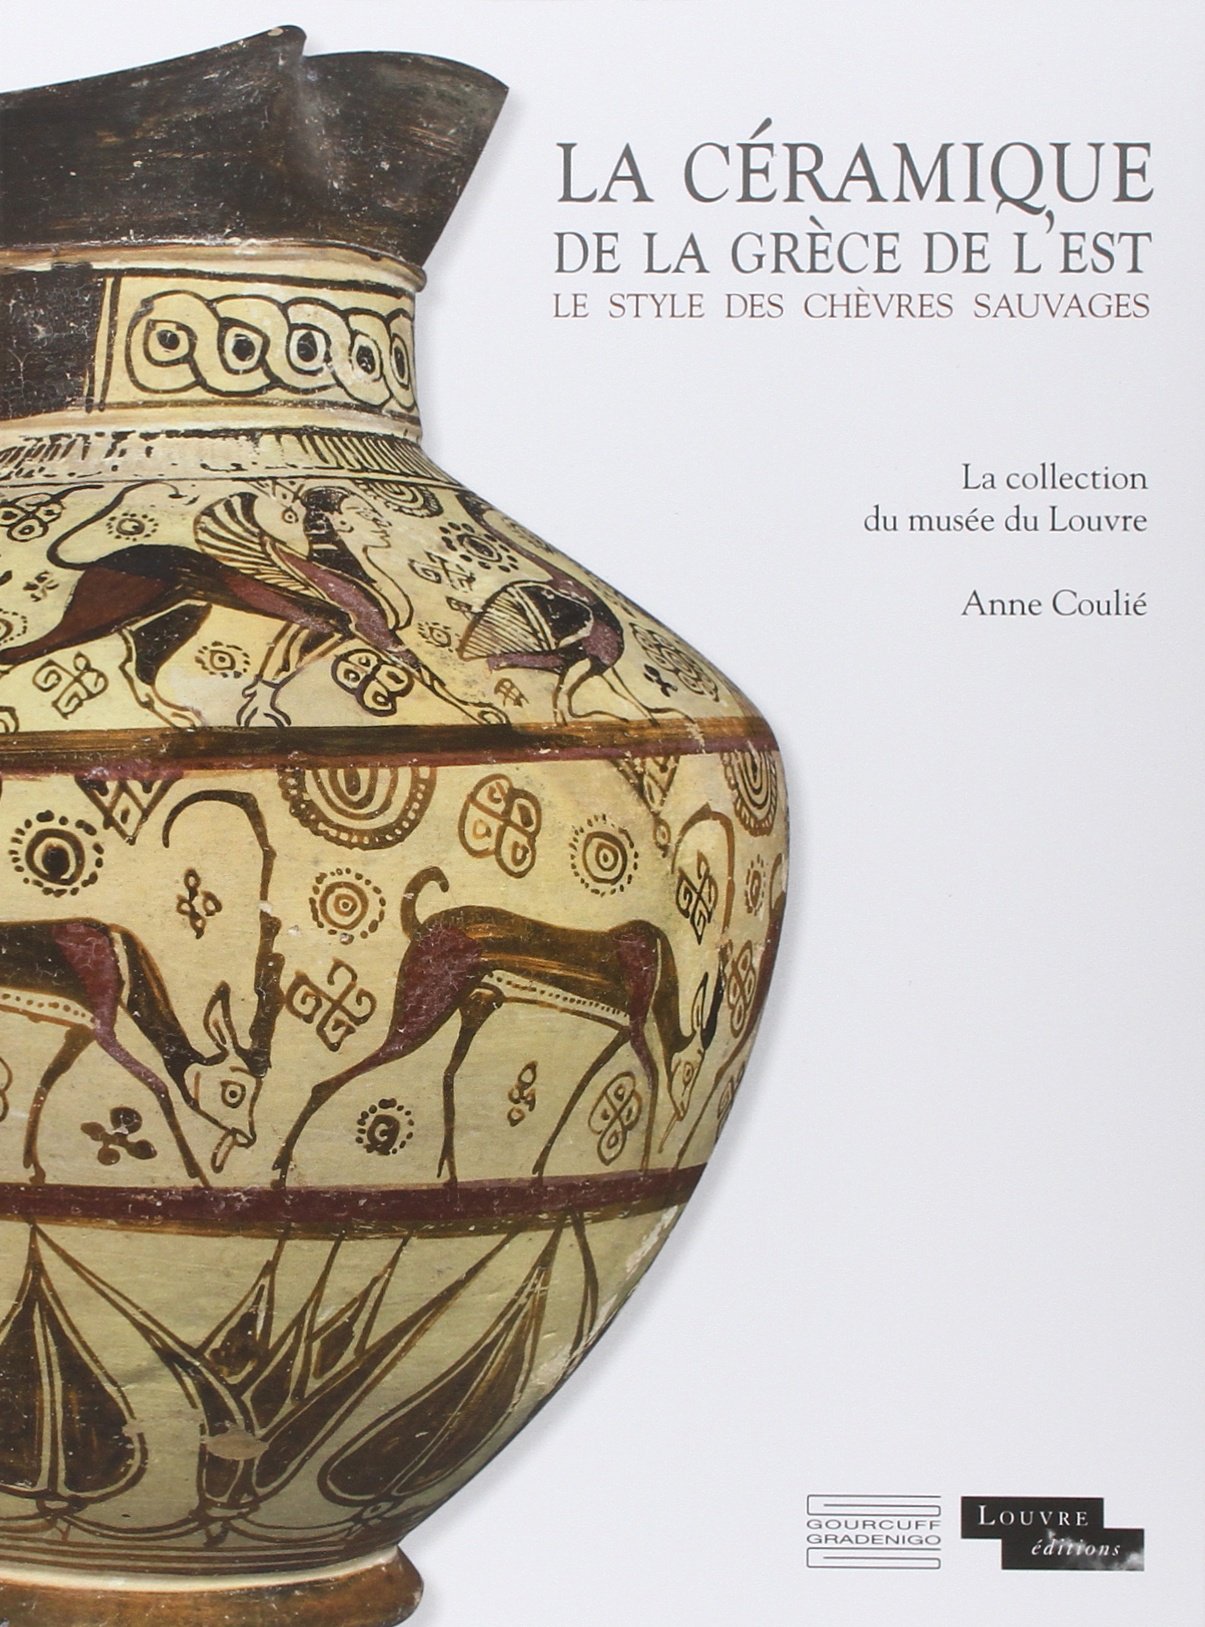 La céramique de la Grèce de l'est. Le style des chèvres sauvages. La collection du musée du Louvre, 2014, 207 p.